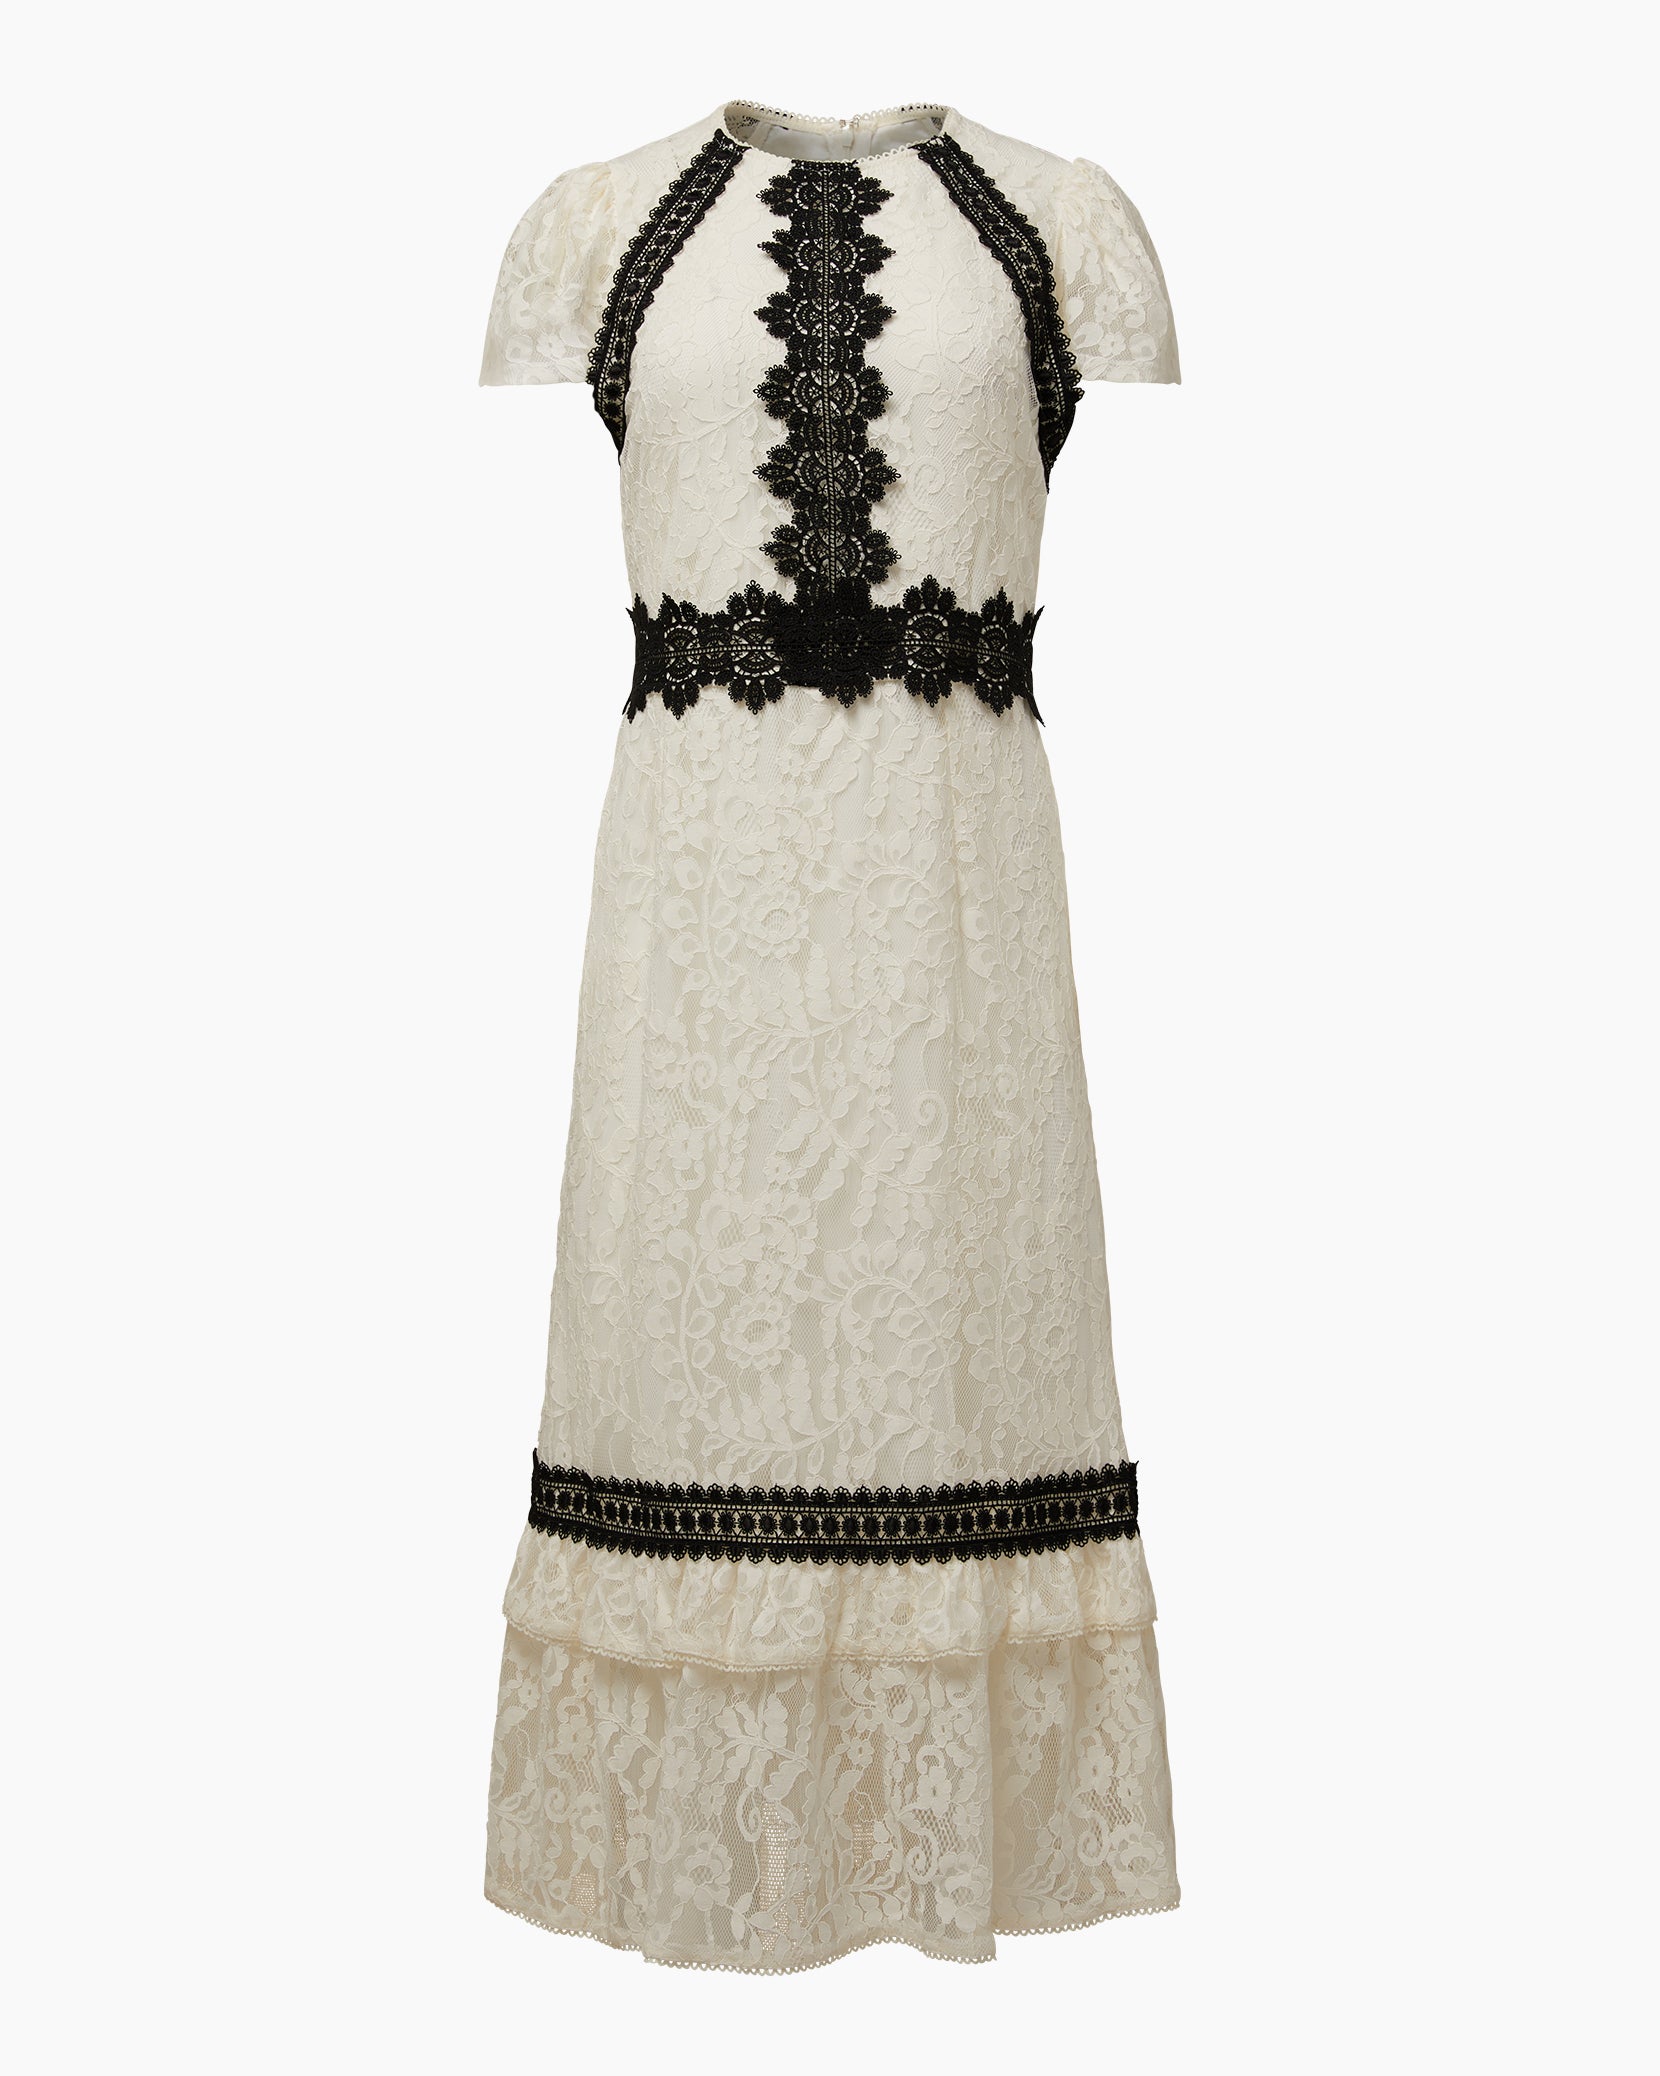 Lace Flutter Midi Dress – Rachel Parcell, Inc.